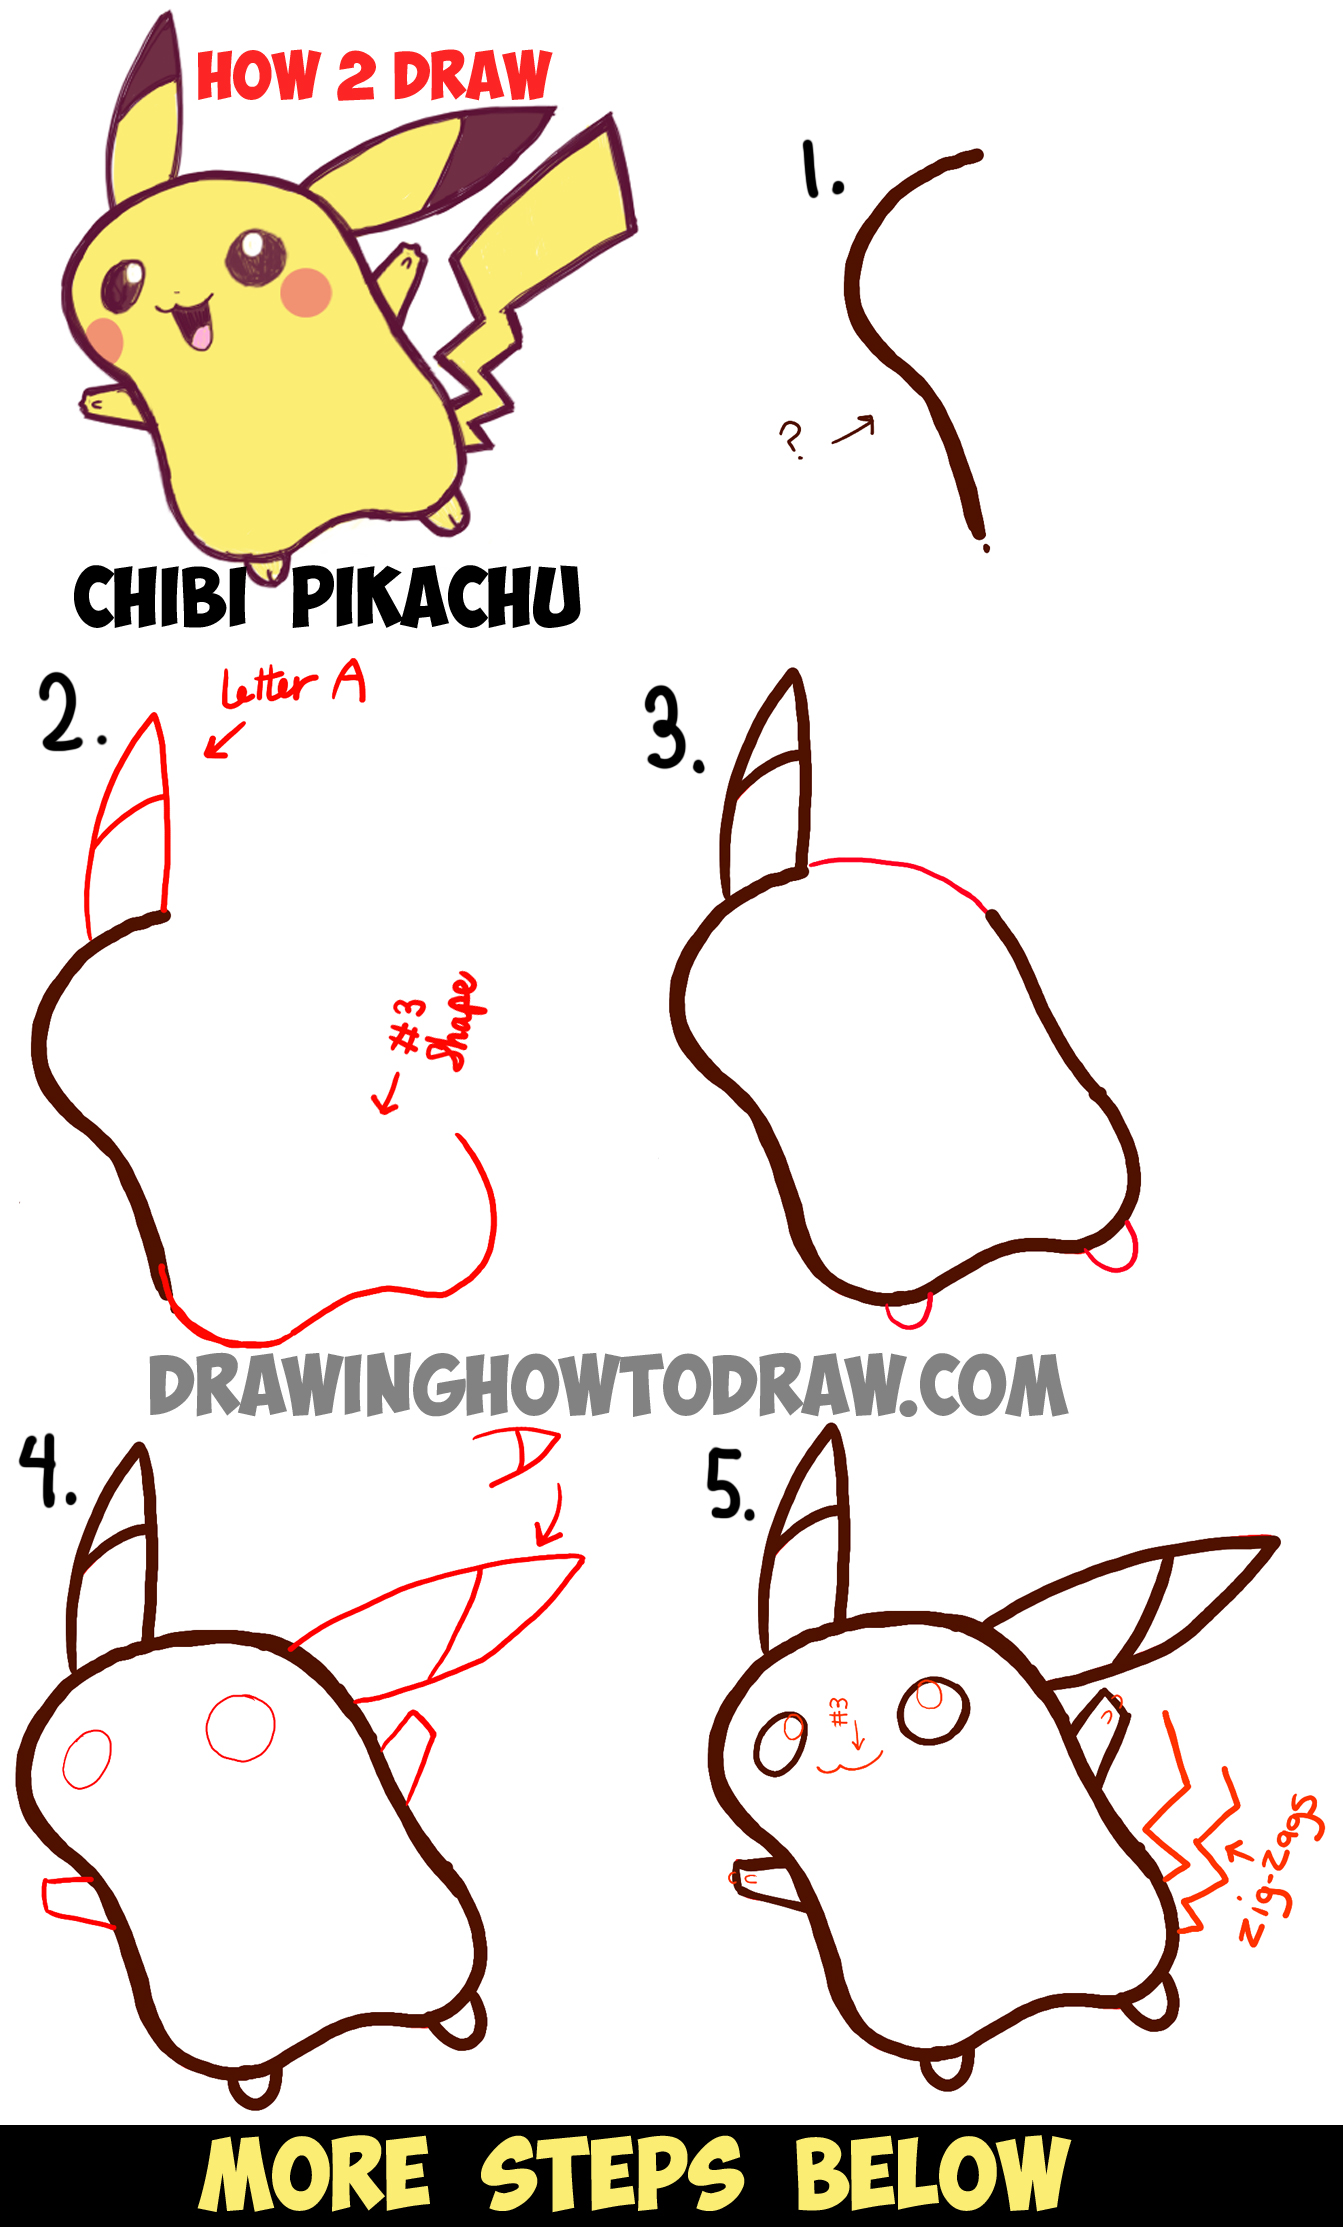 Pikachu [OC] : r/drawing